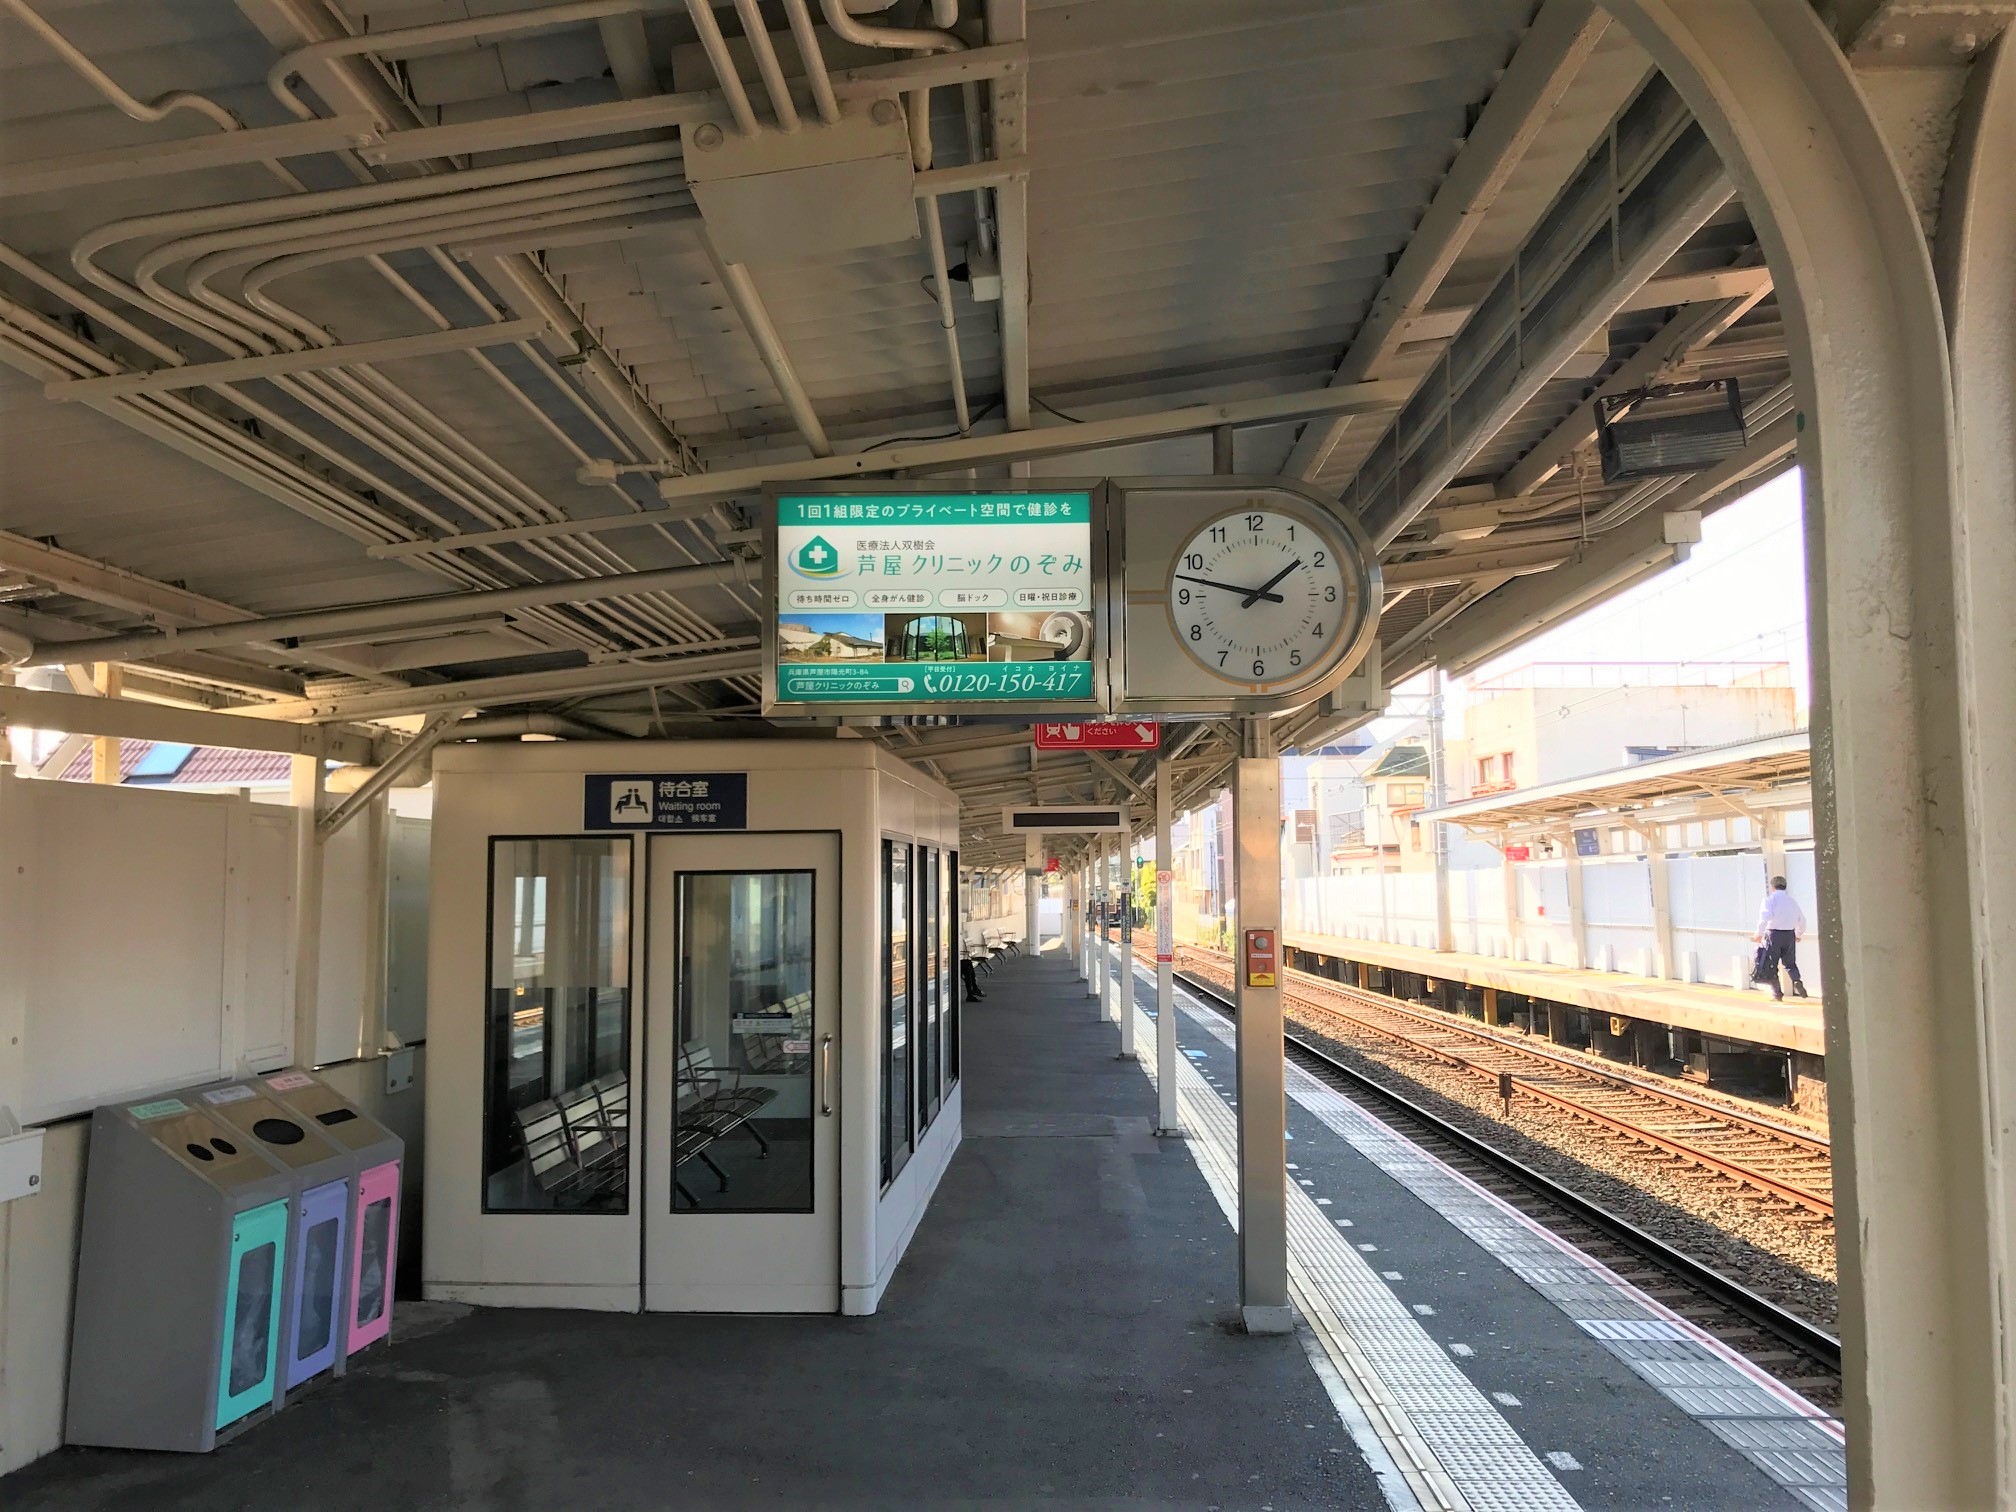 阪急 芦屋川駅 駅看板